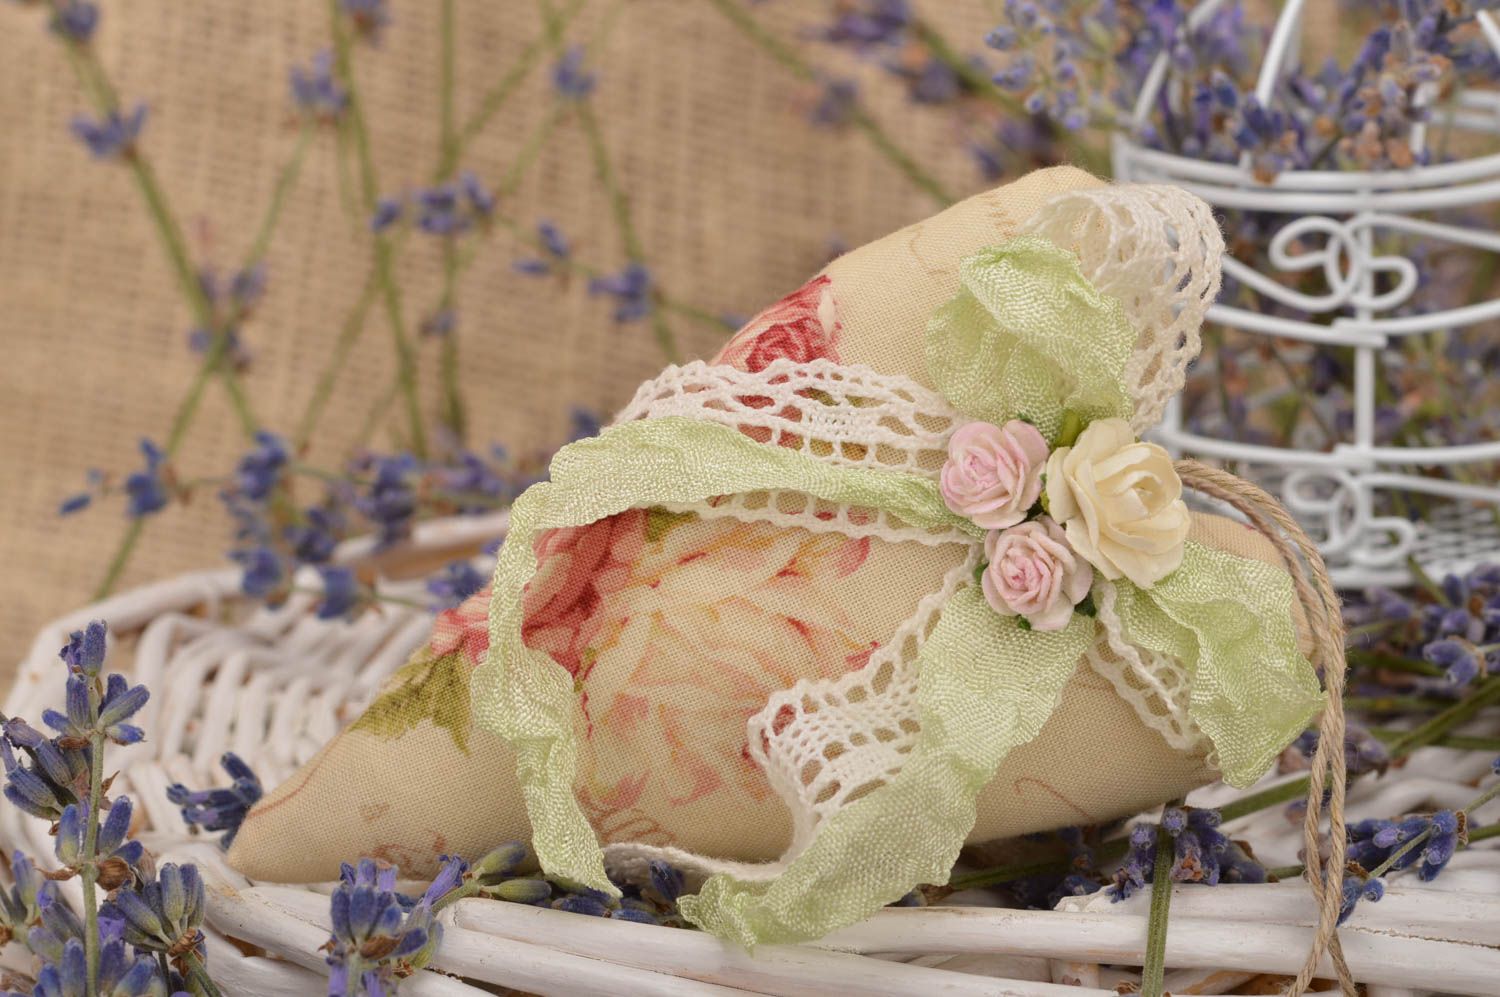 Интерьерная подвеска сердце с цветами с запахом ванили тектсильное ручной работы фото 1